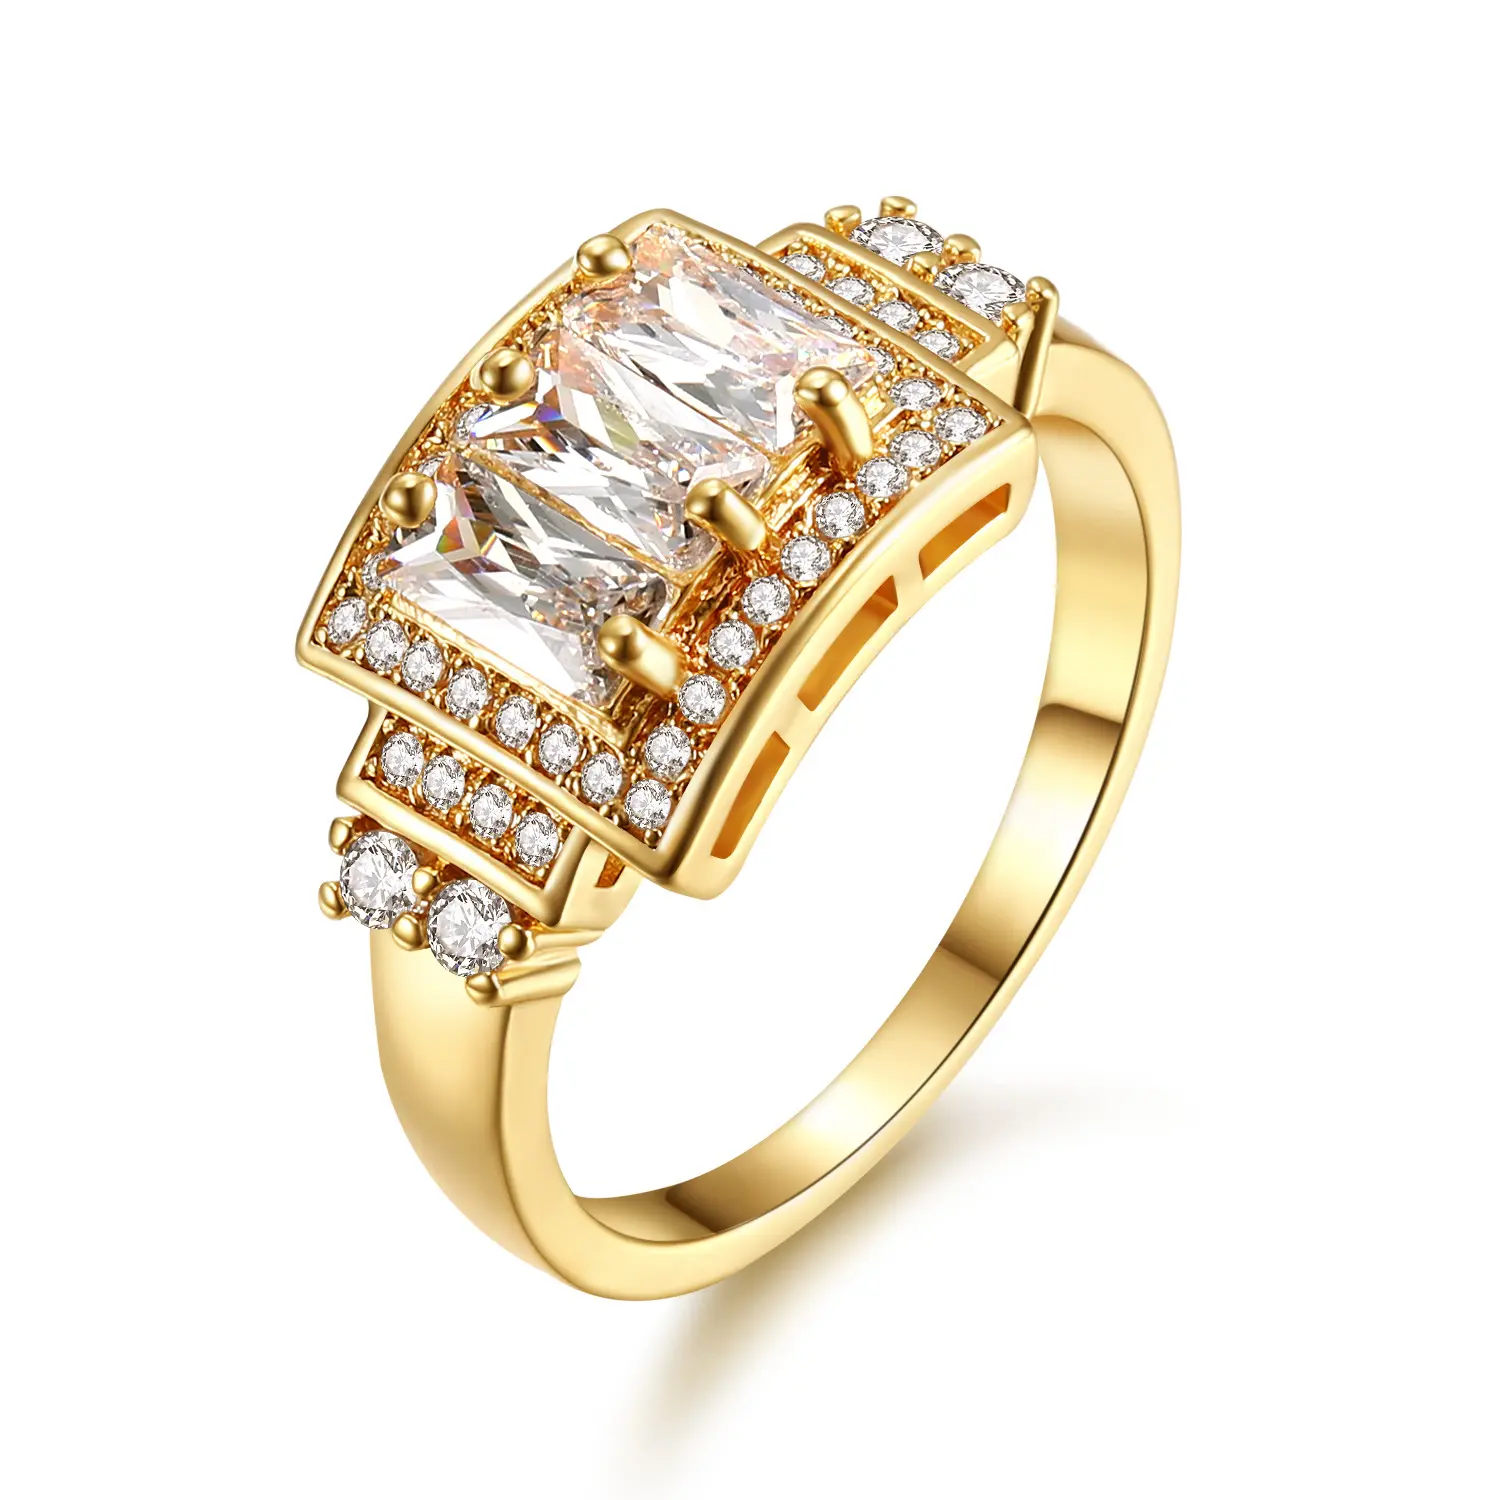 الأزياء هندسية ساحة الزركون خاتم الذهب الزركون خاتم الزفاف كريستال سيدة خاتم فخم